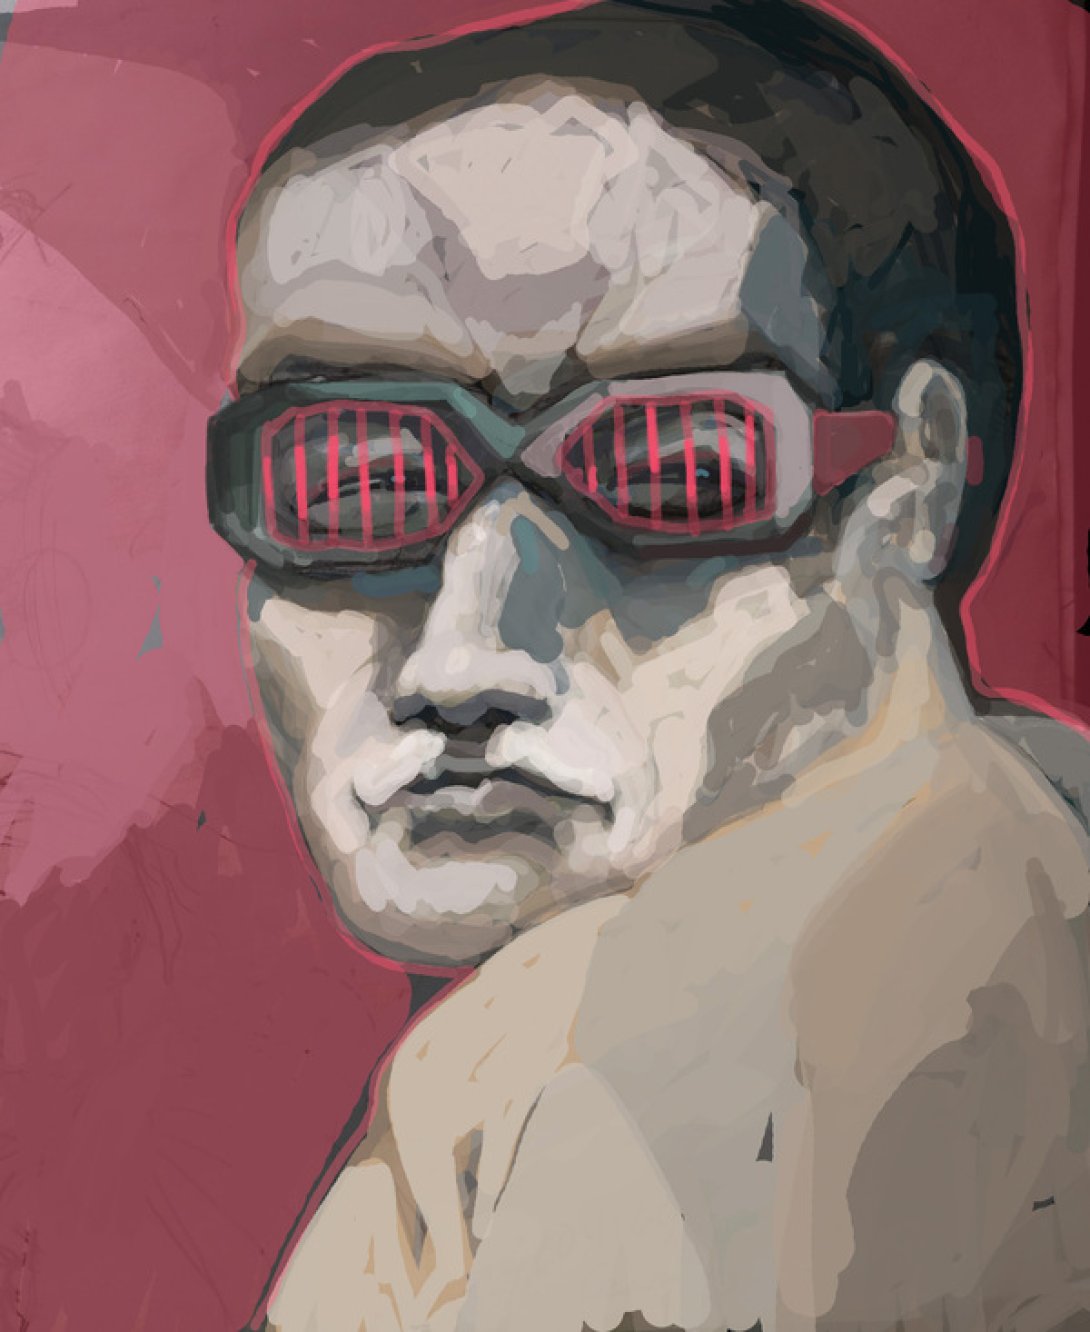 Obra de Walfrido Hau: "Incerdlys real incredulys" representa un hombre con gafas mirando por encima del hombro.